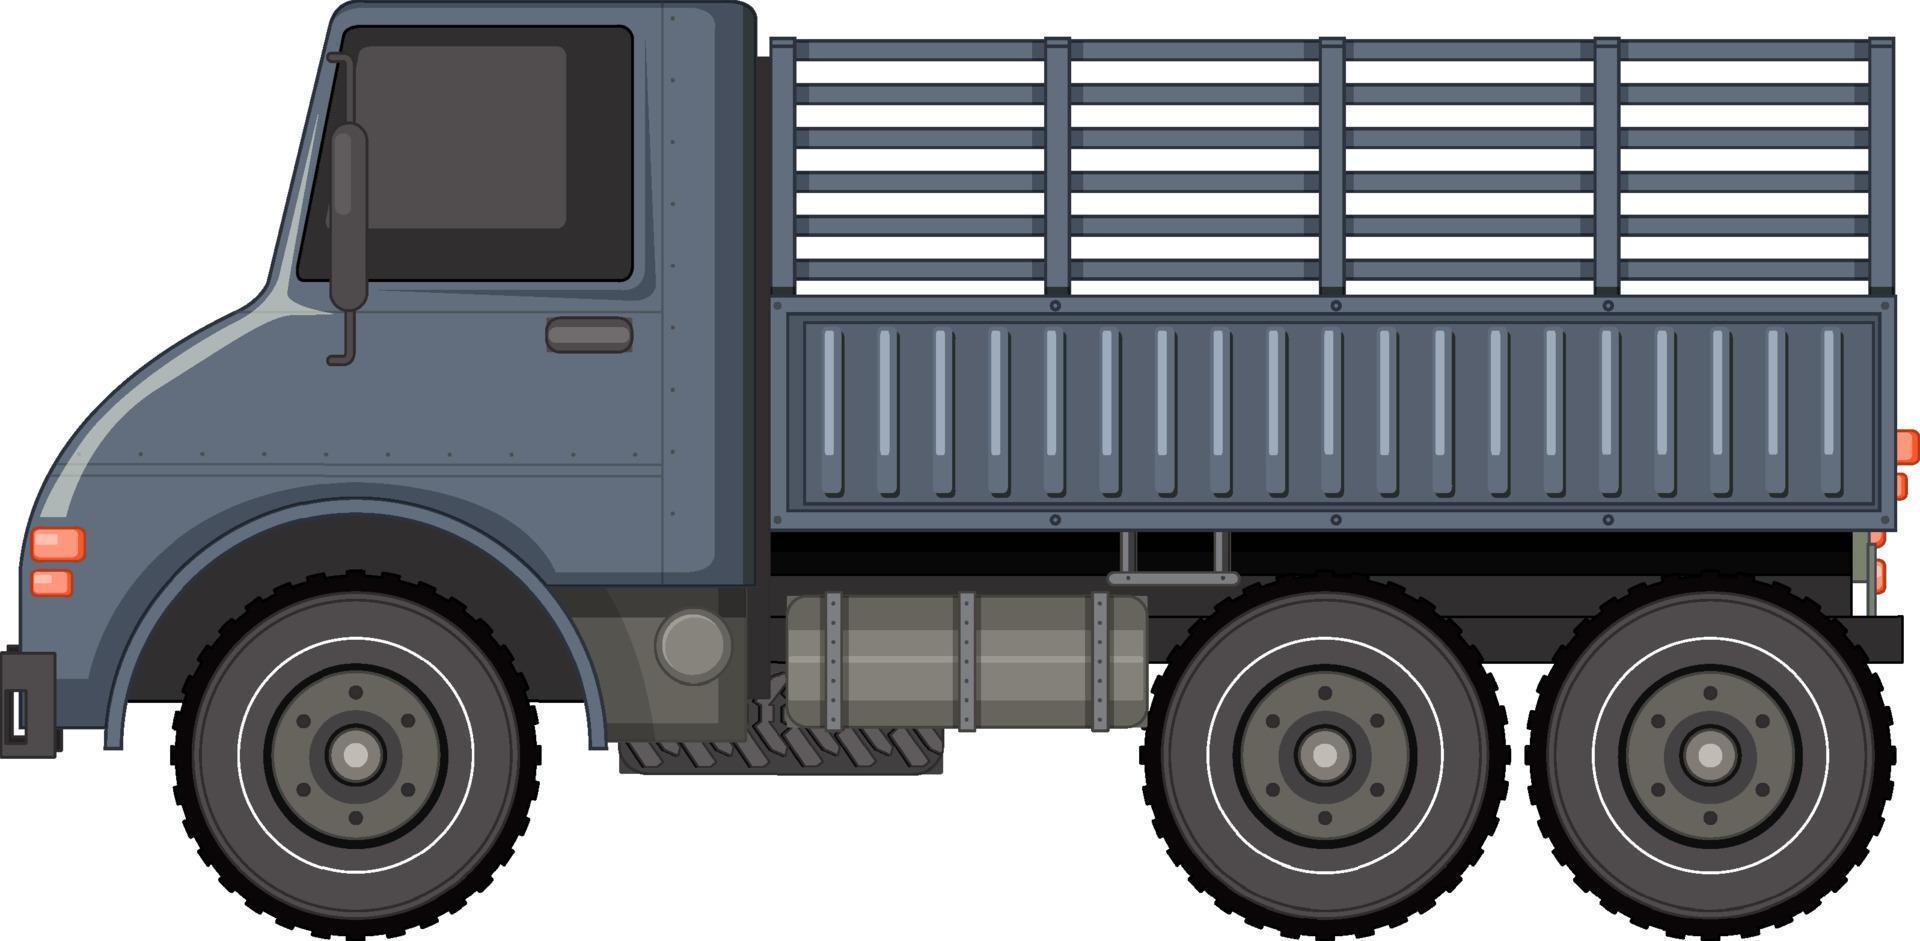 véhicule militaire sur fond blanc vecteur